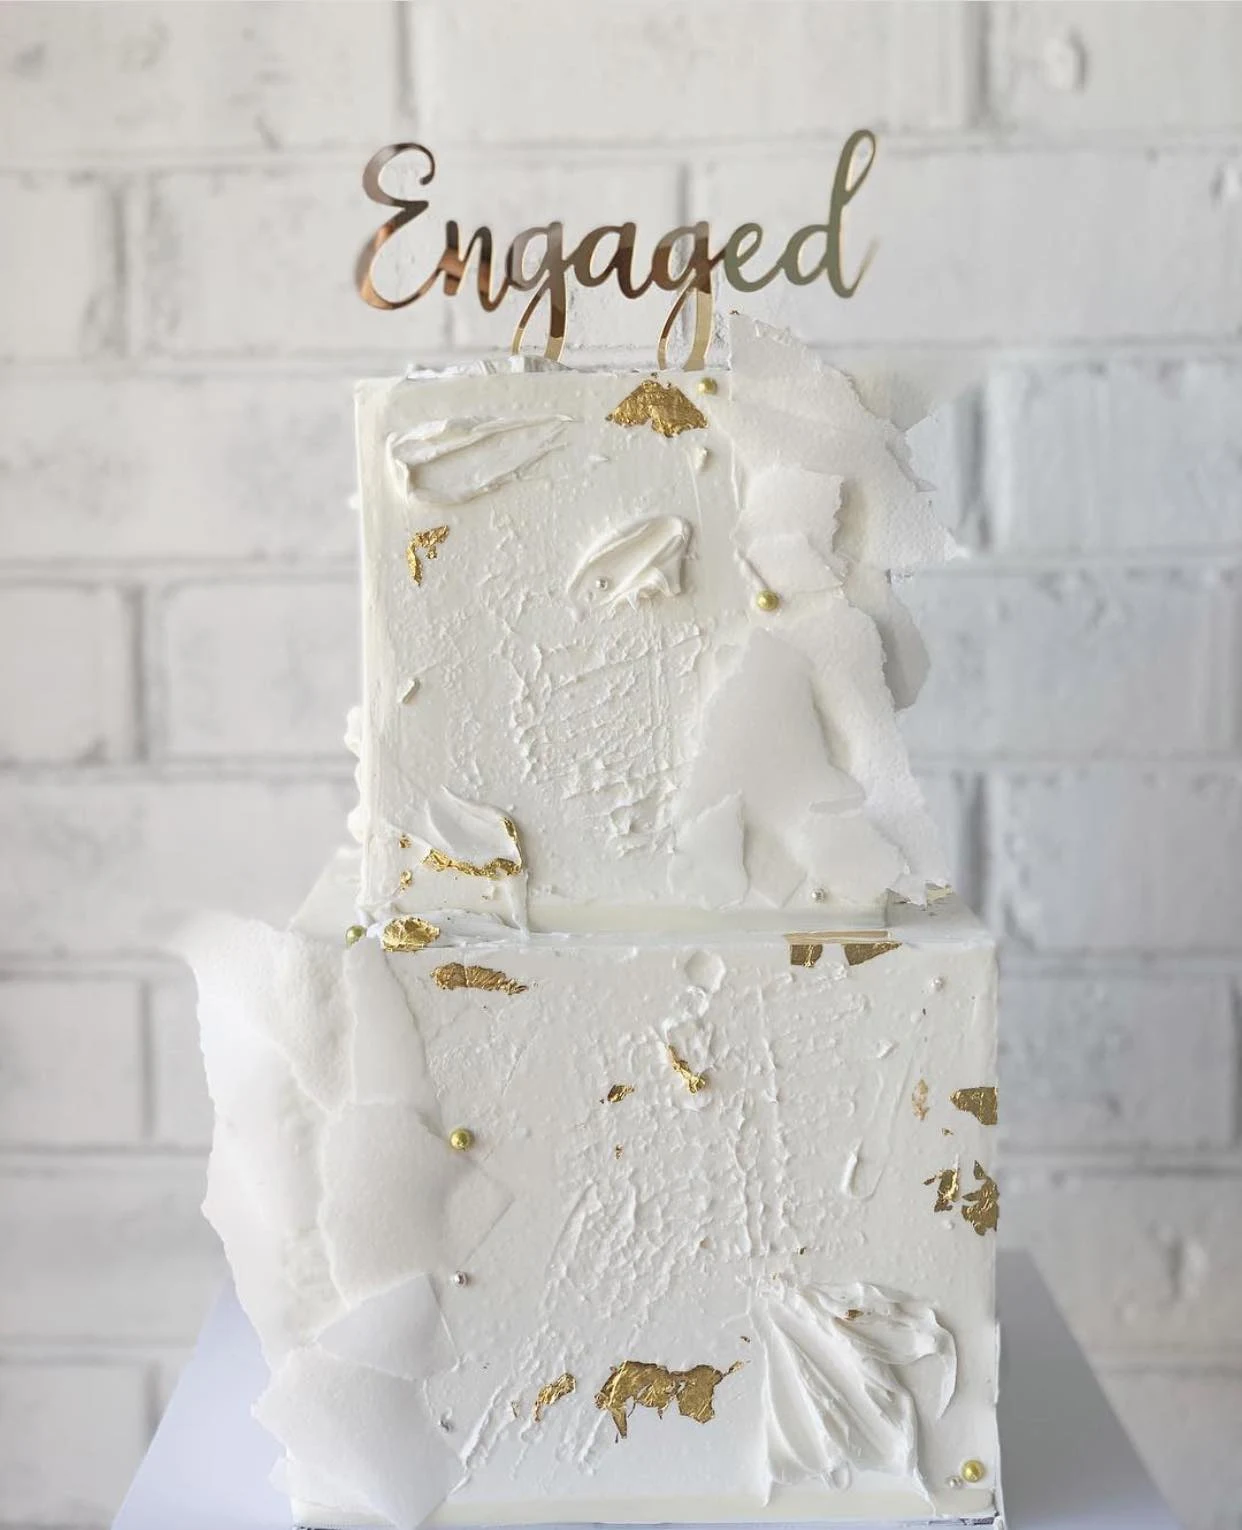 nsw sydney wedding cakes cake designer engagement cakes